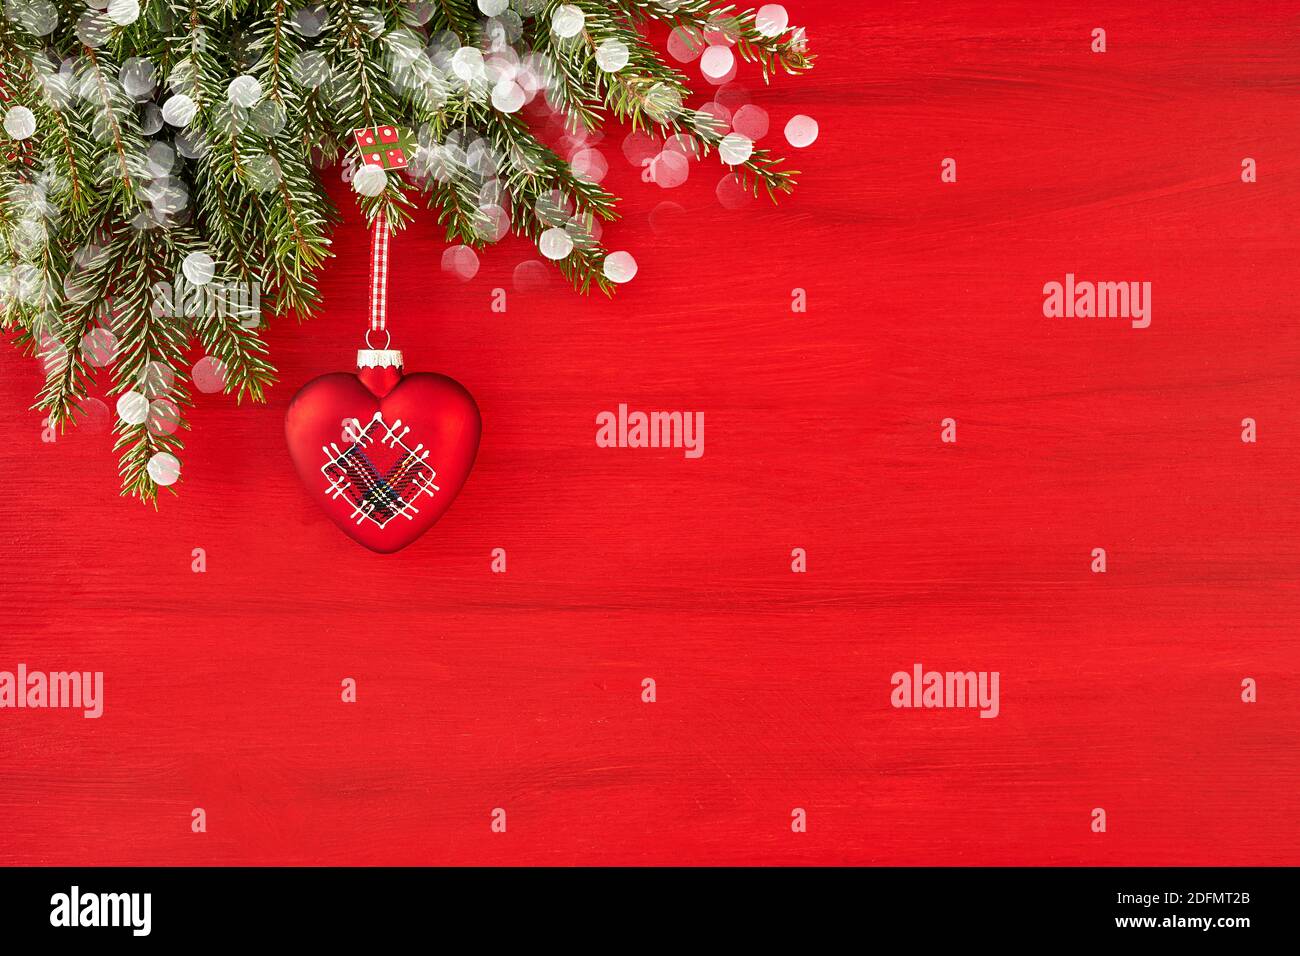 Rote Weihnachten Hintergrund mit Tannenbaum und roten Herzen Dekoration. Speicherplatz kopieren Stockfoto